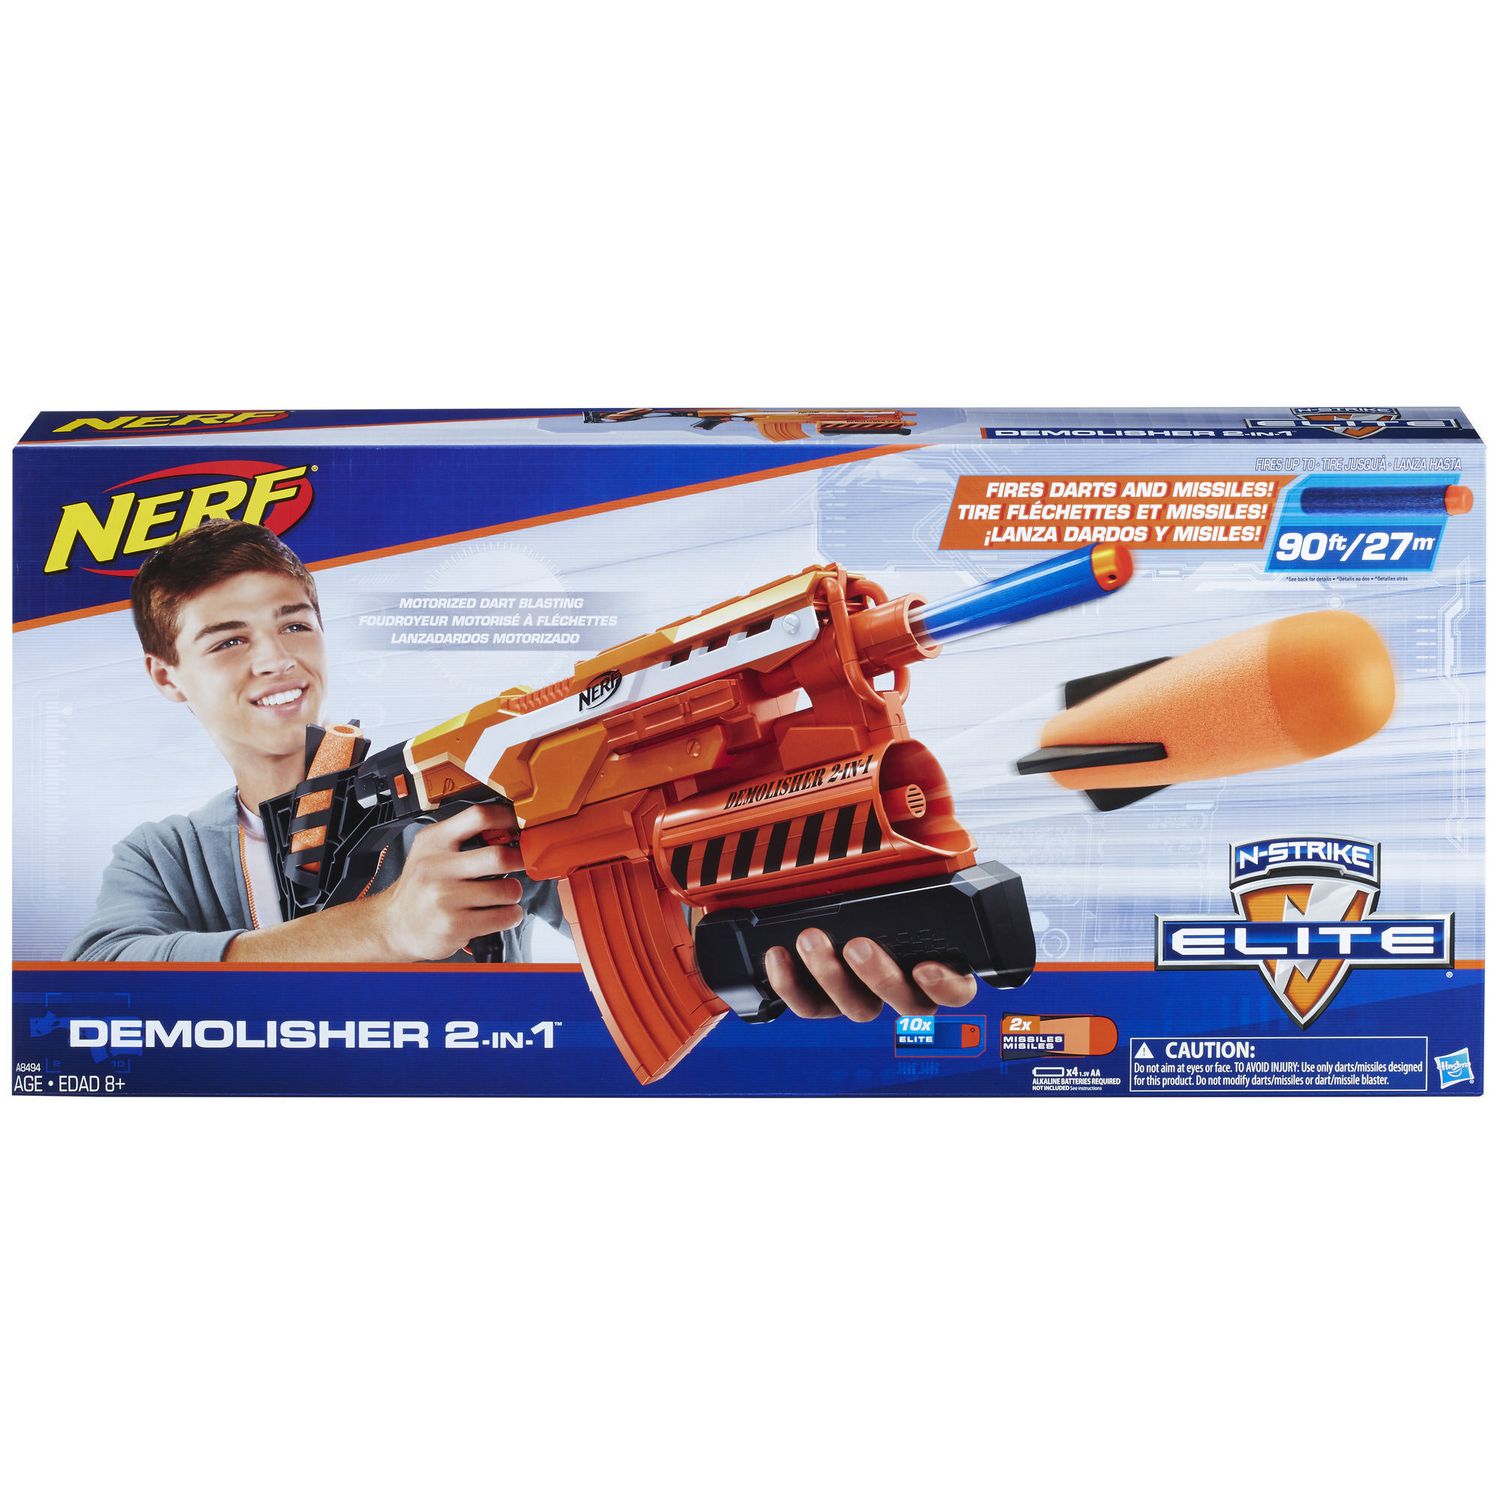 Nerf N-strike Eite Missile Amunation 